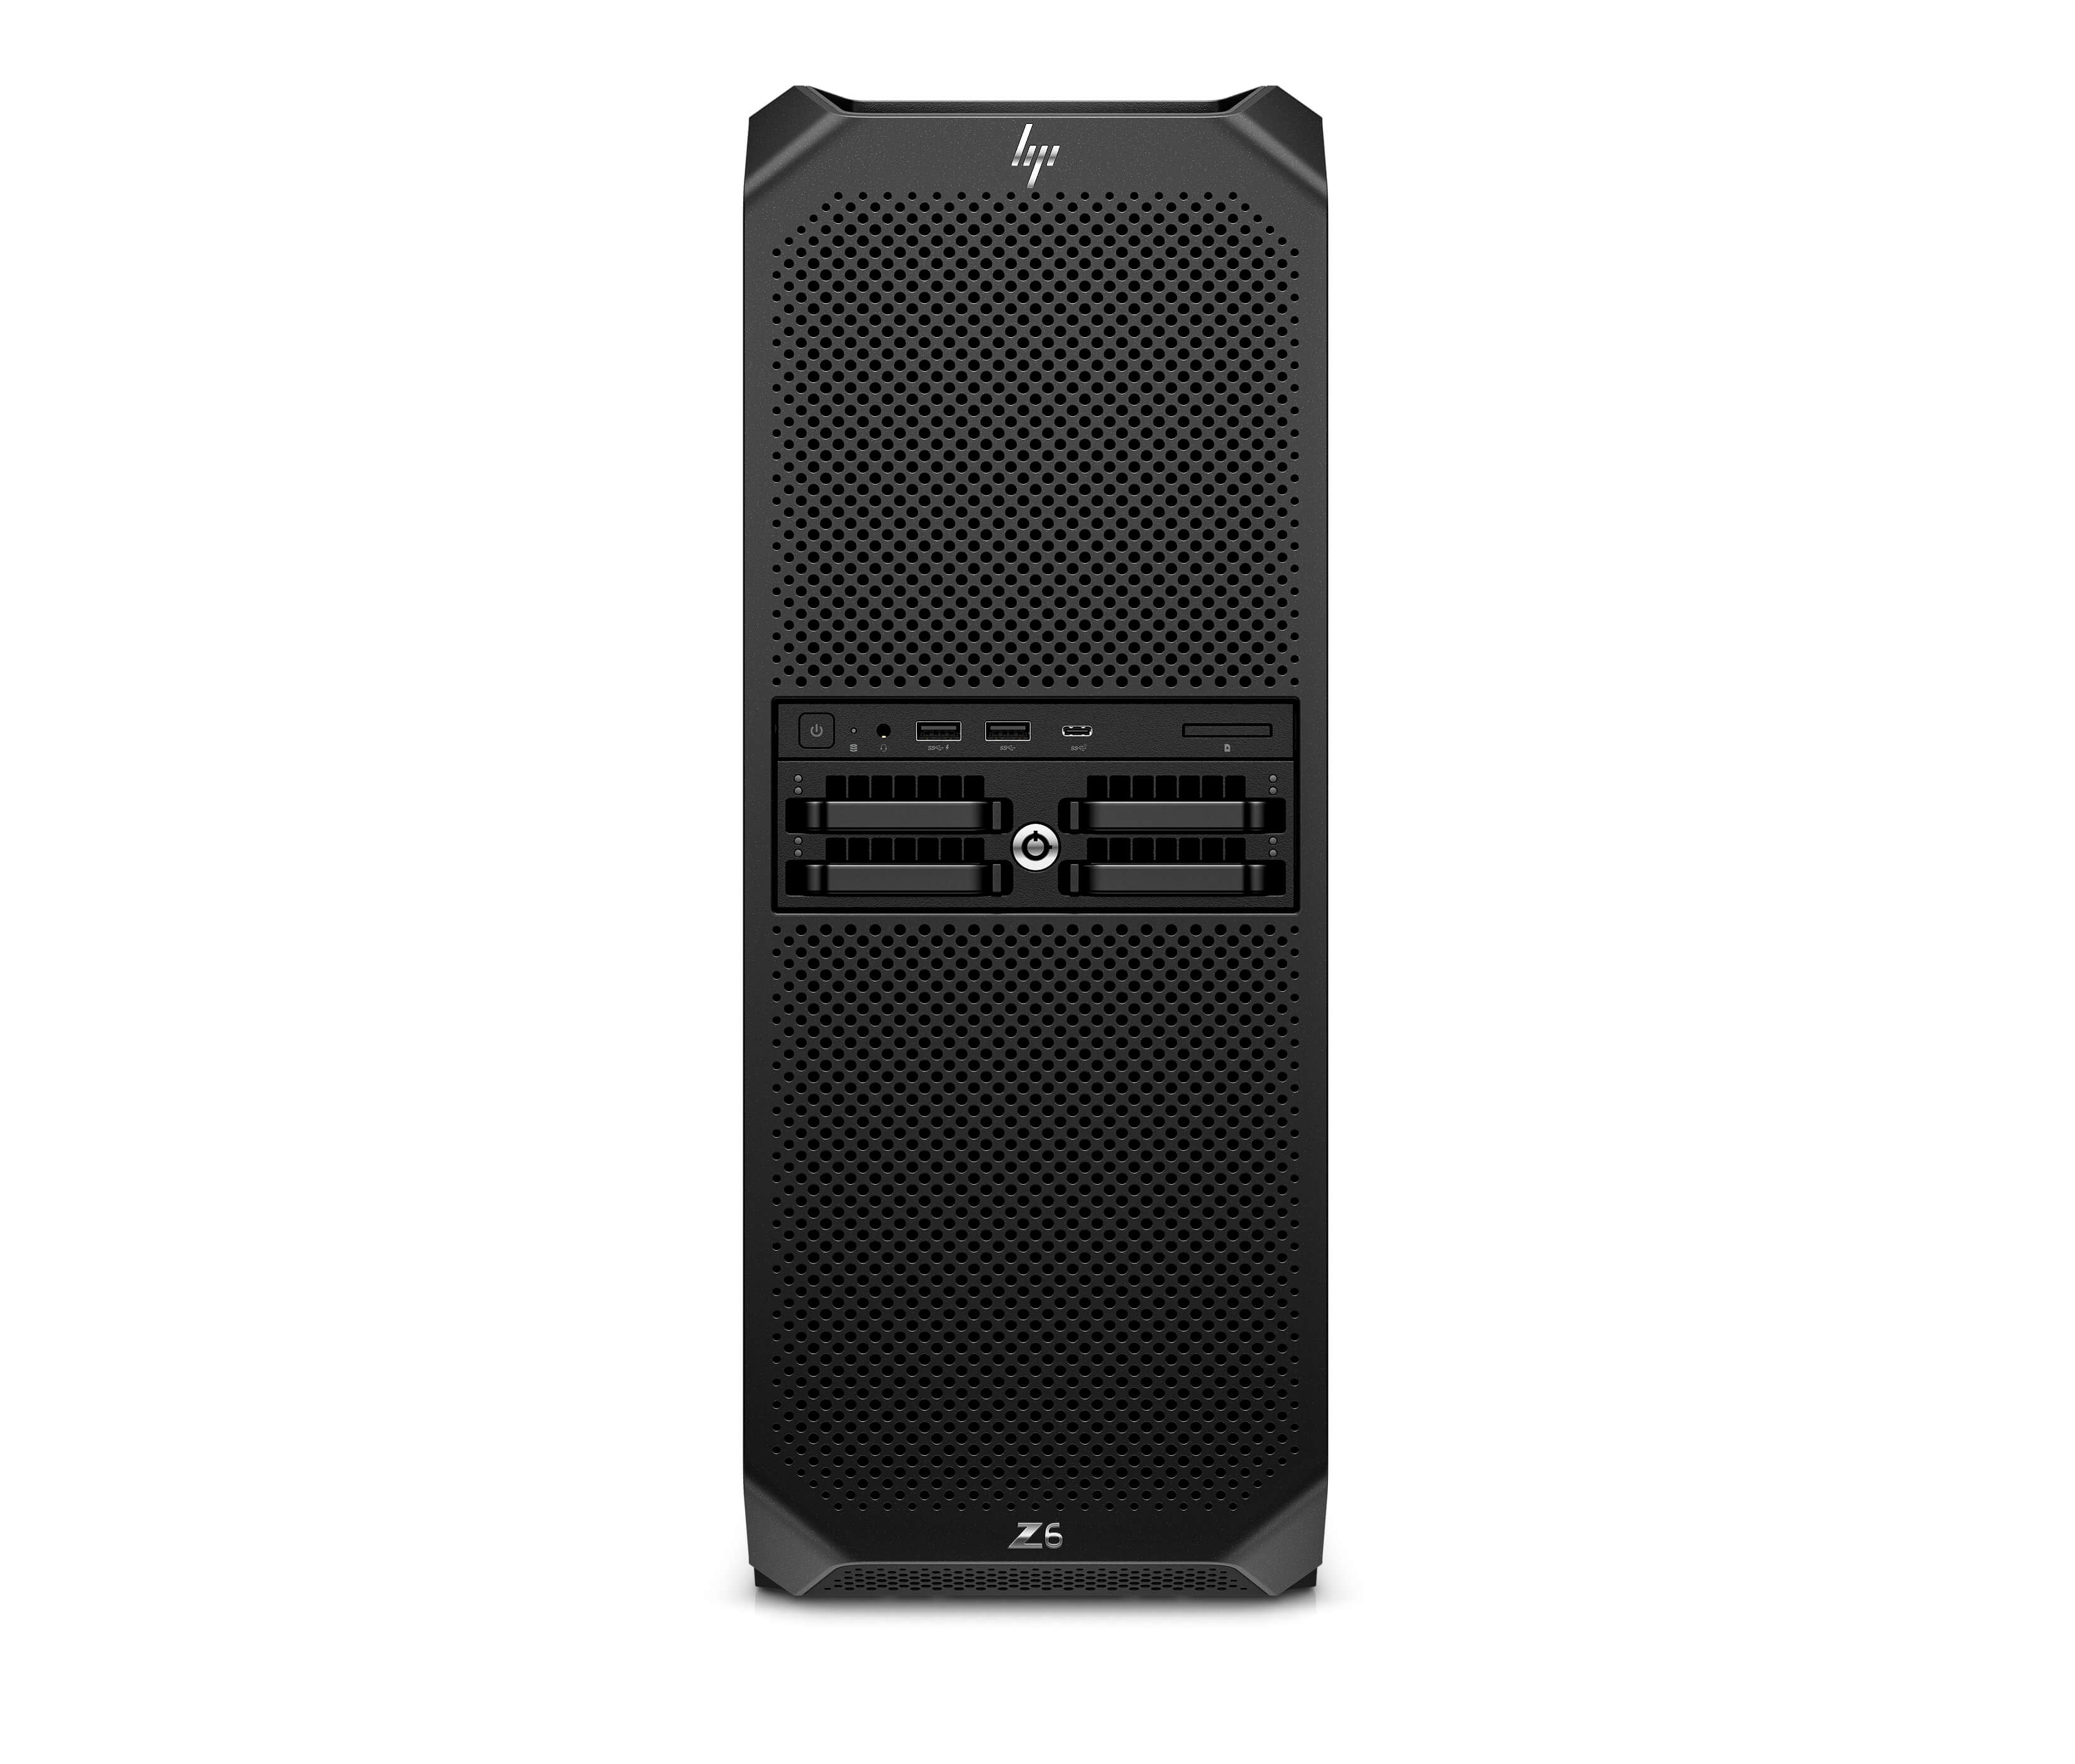 HP Z6 G5 A Workstation